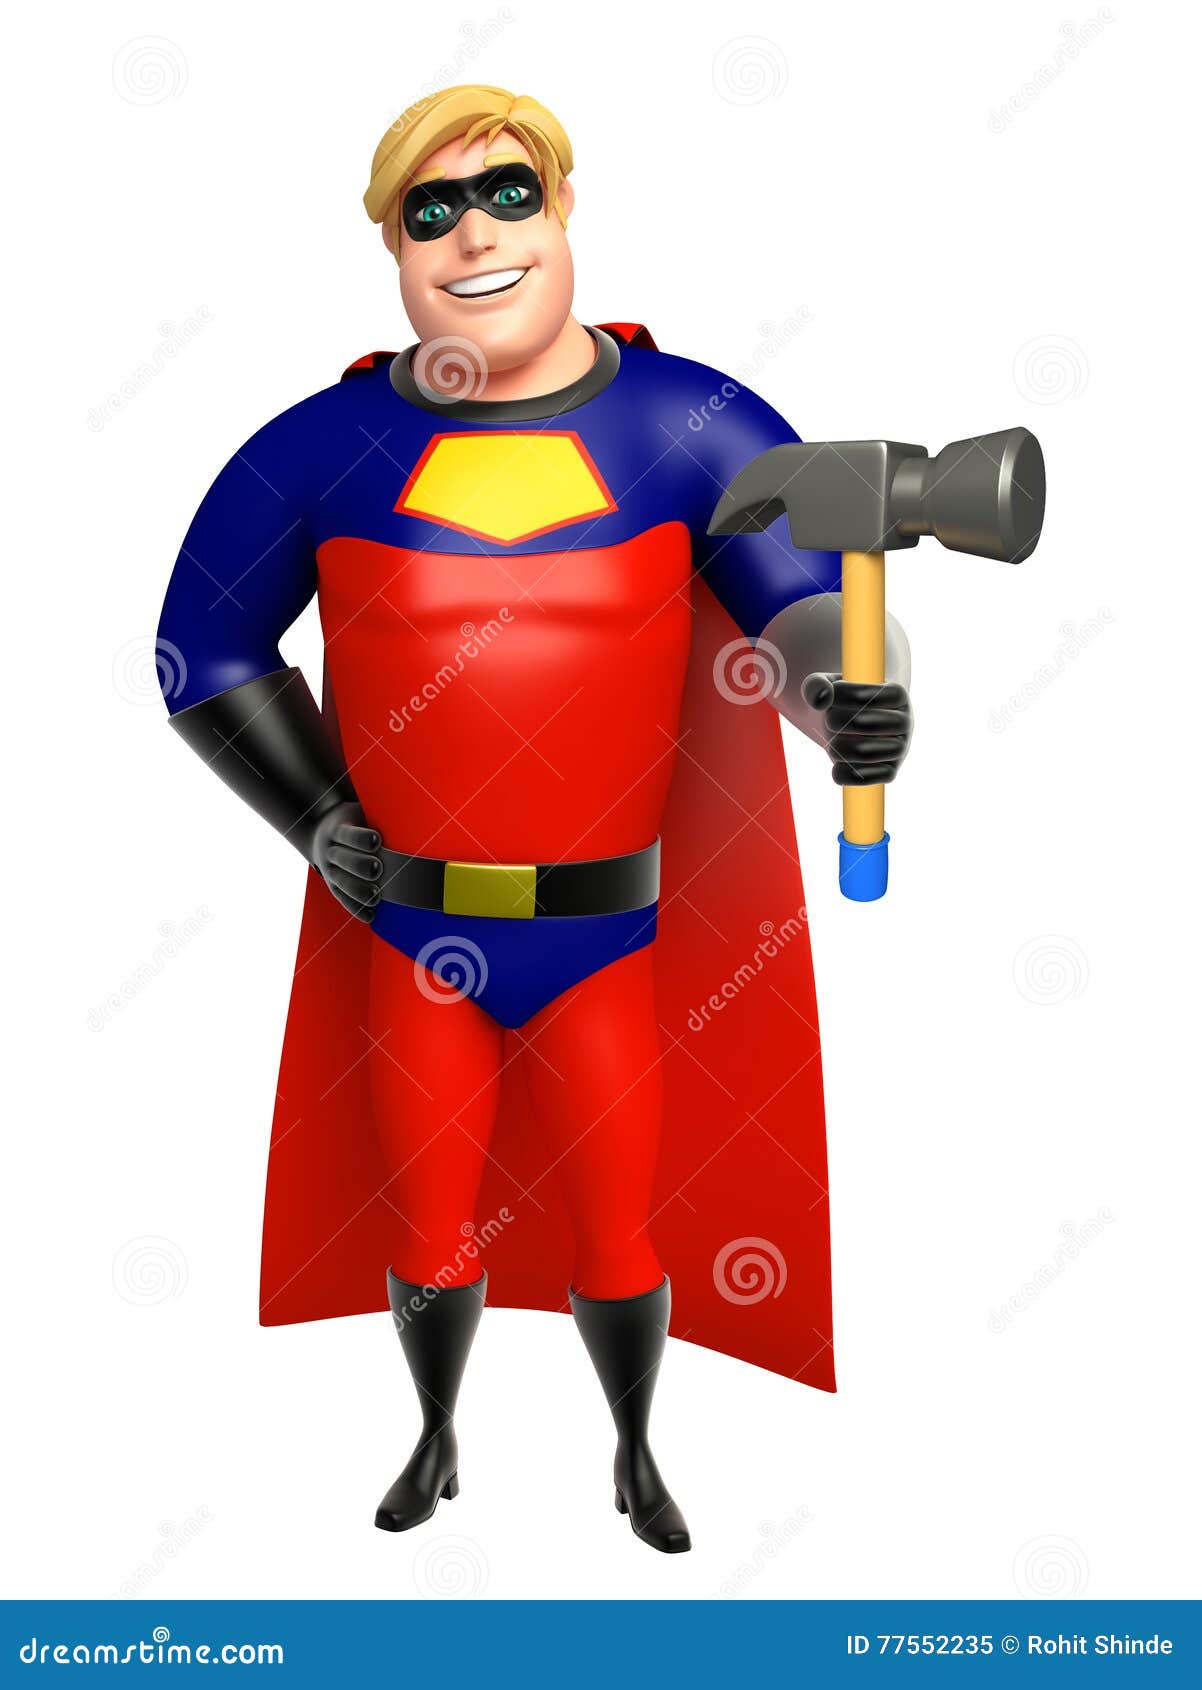 有锤子的超级英雄 库存例证. 插画 包括有 服装, 锤子, 科学, 罪行, 空间, 生活方式, 冷静, 动画片 - 77495646